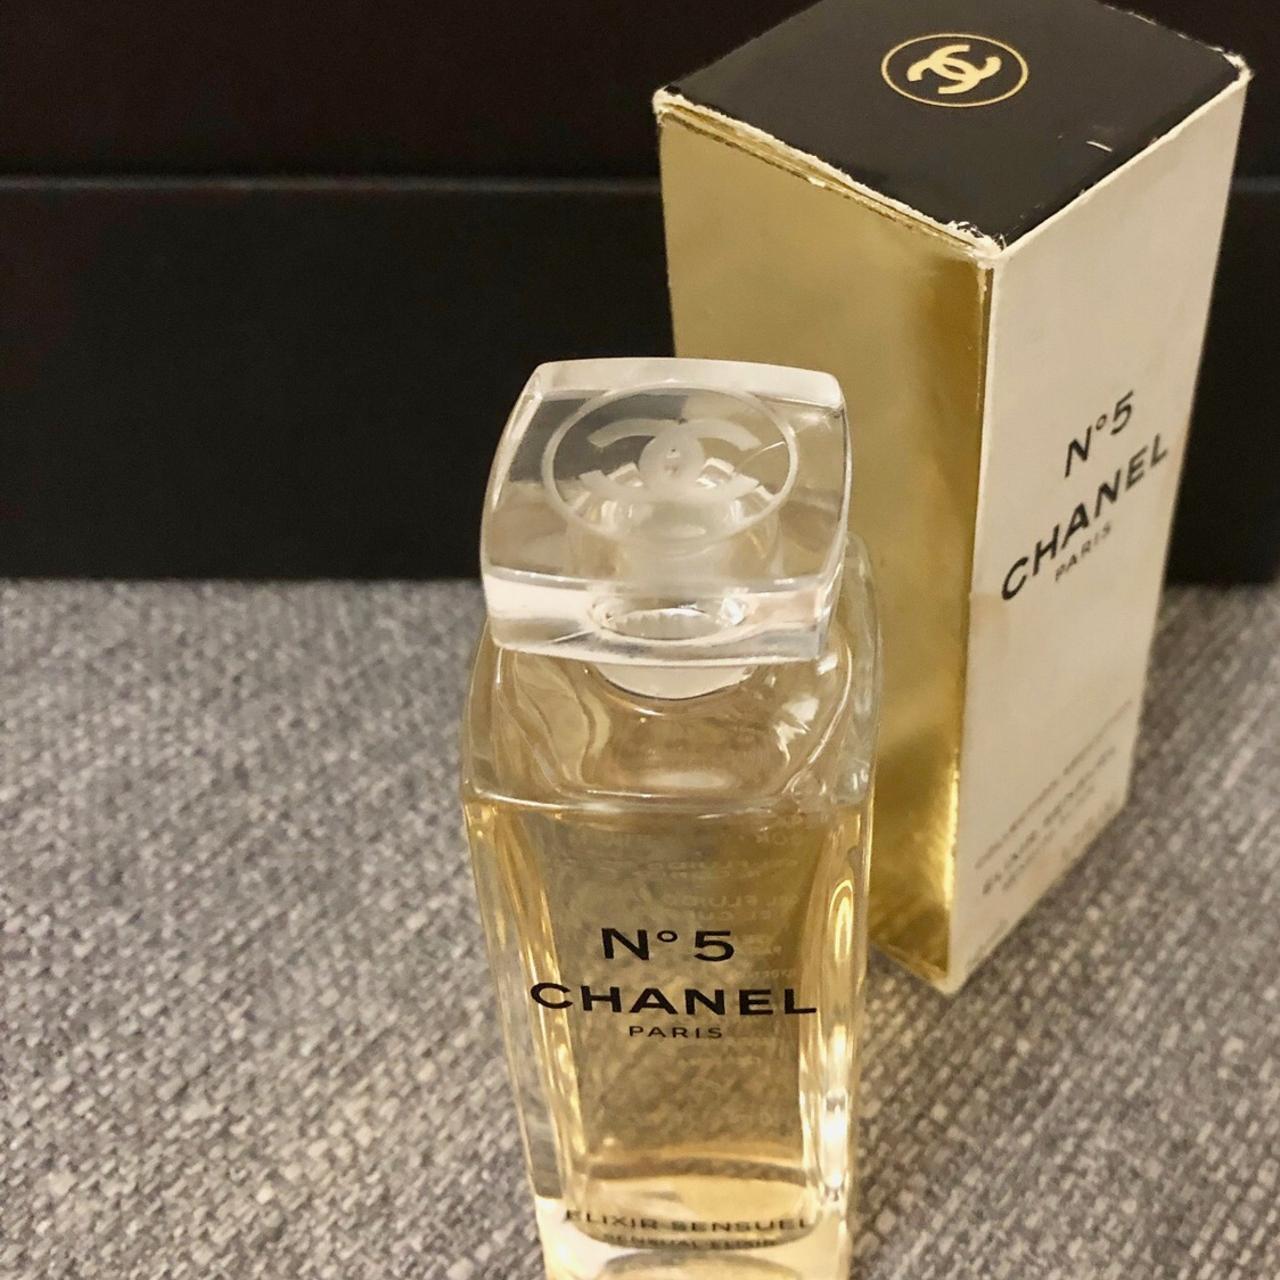 Chanel no 5 Paris , Elixir Sensual , Chanel number 5